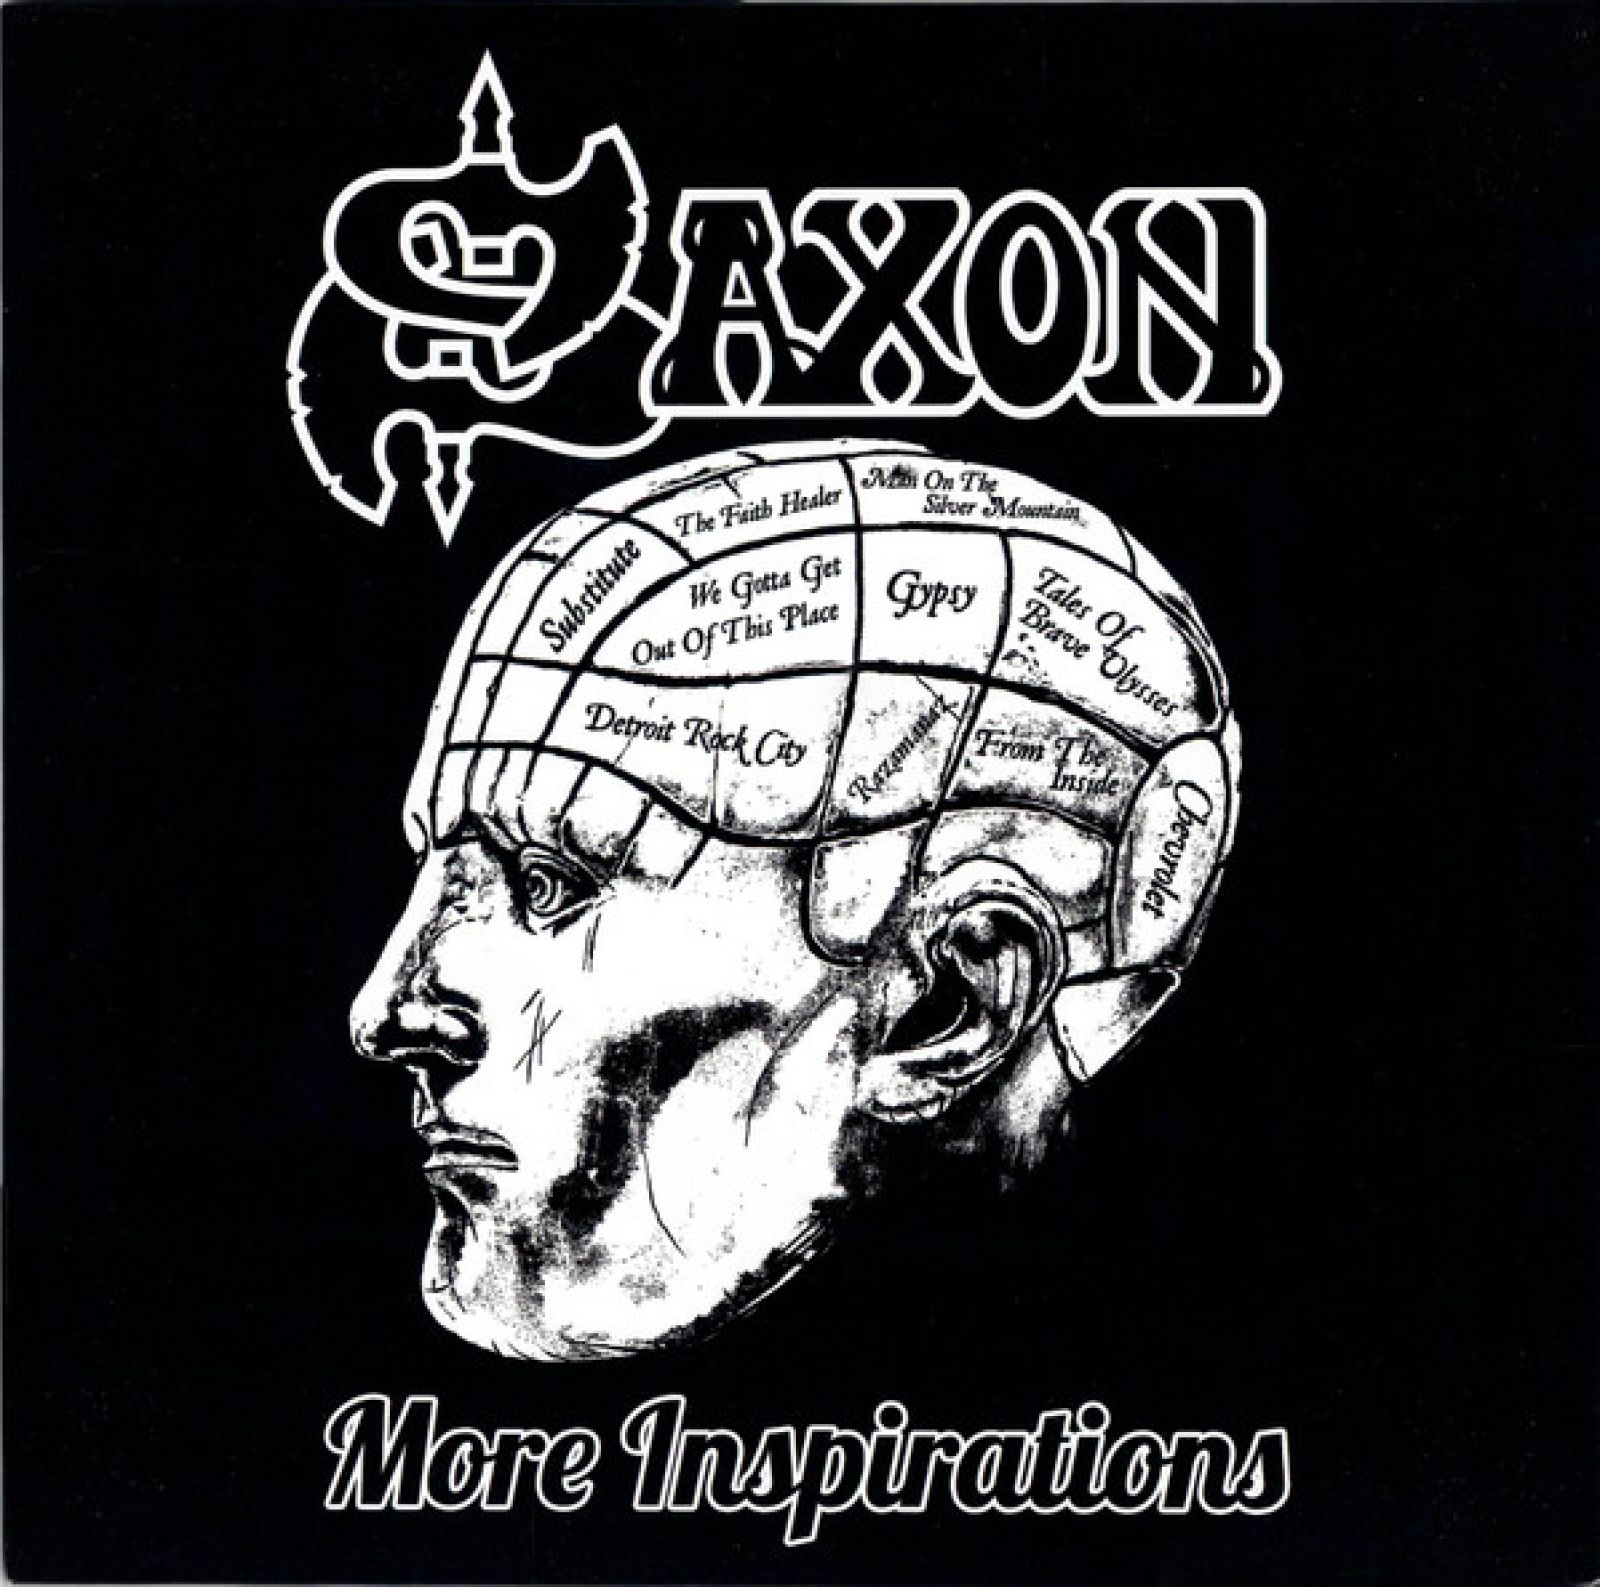 Виниловая пластинка Saxon, More Inspirations (0190296135866) виниловая пластинка saxon scarifice